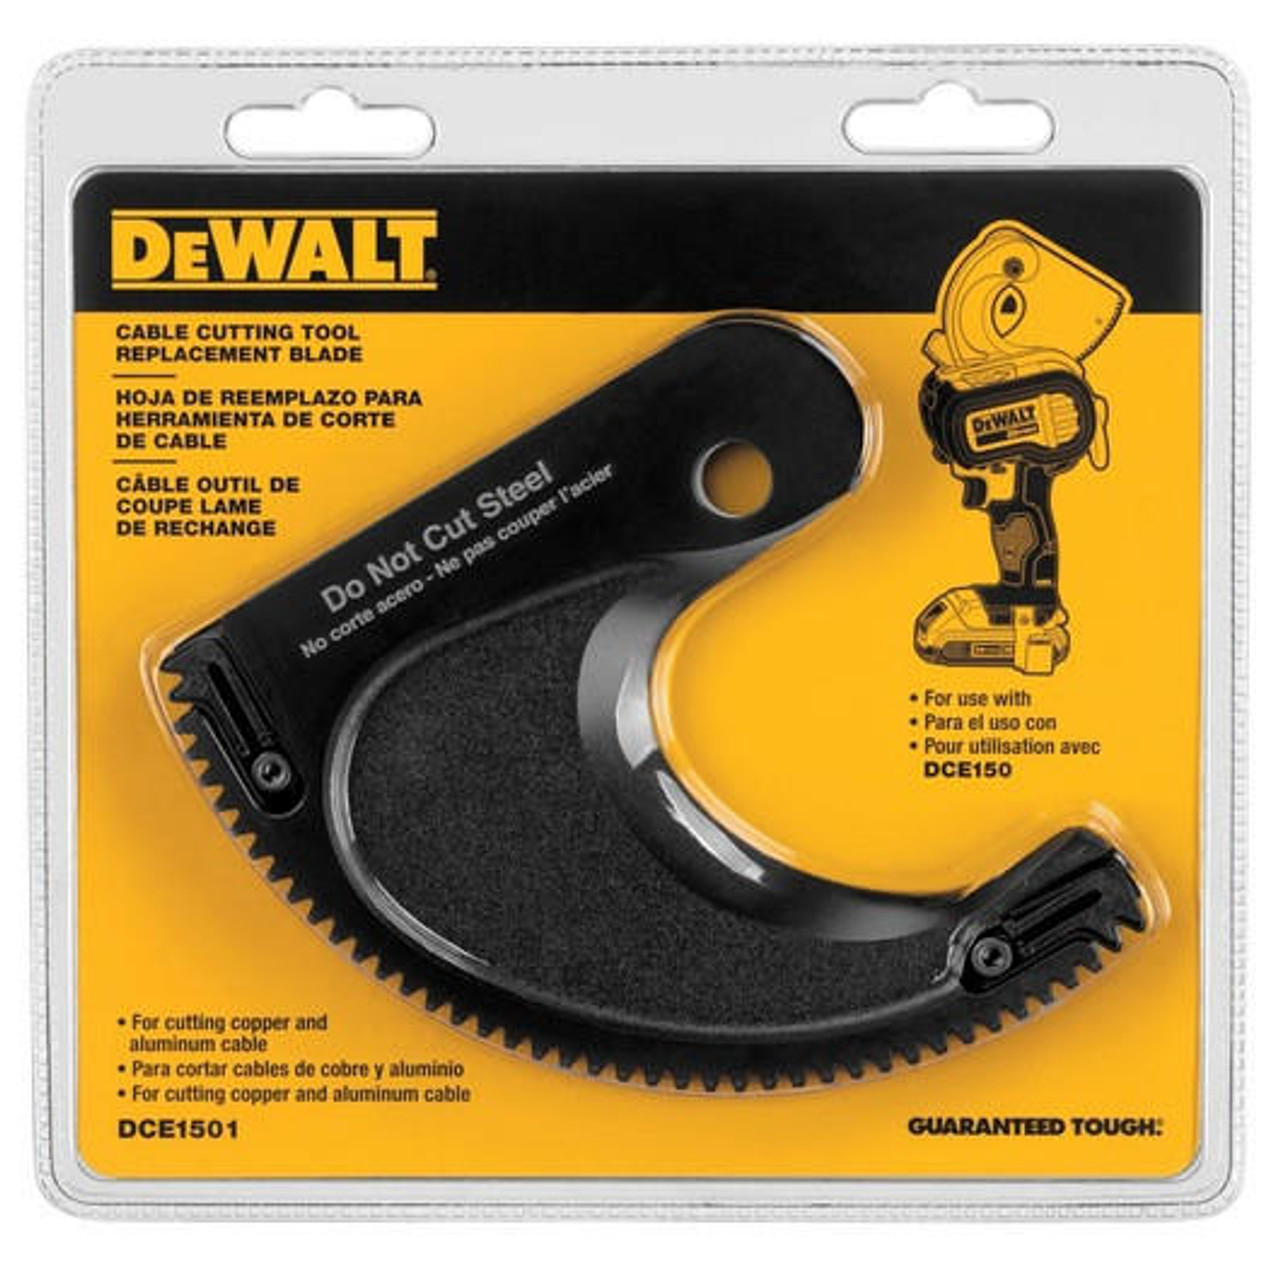 Dewalt DEWALT DCE1501 Cable Cutting Tool Replacement Blade for the DCE150 Cable Cutting Tool 